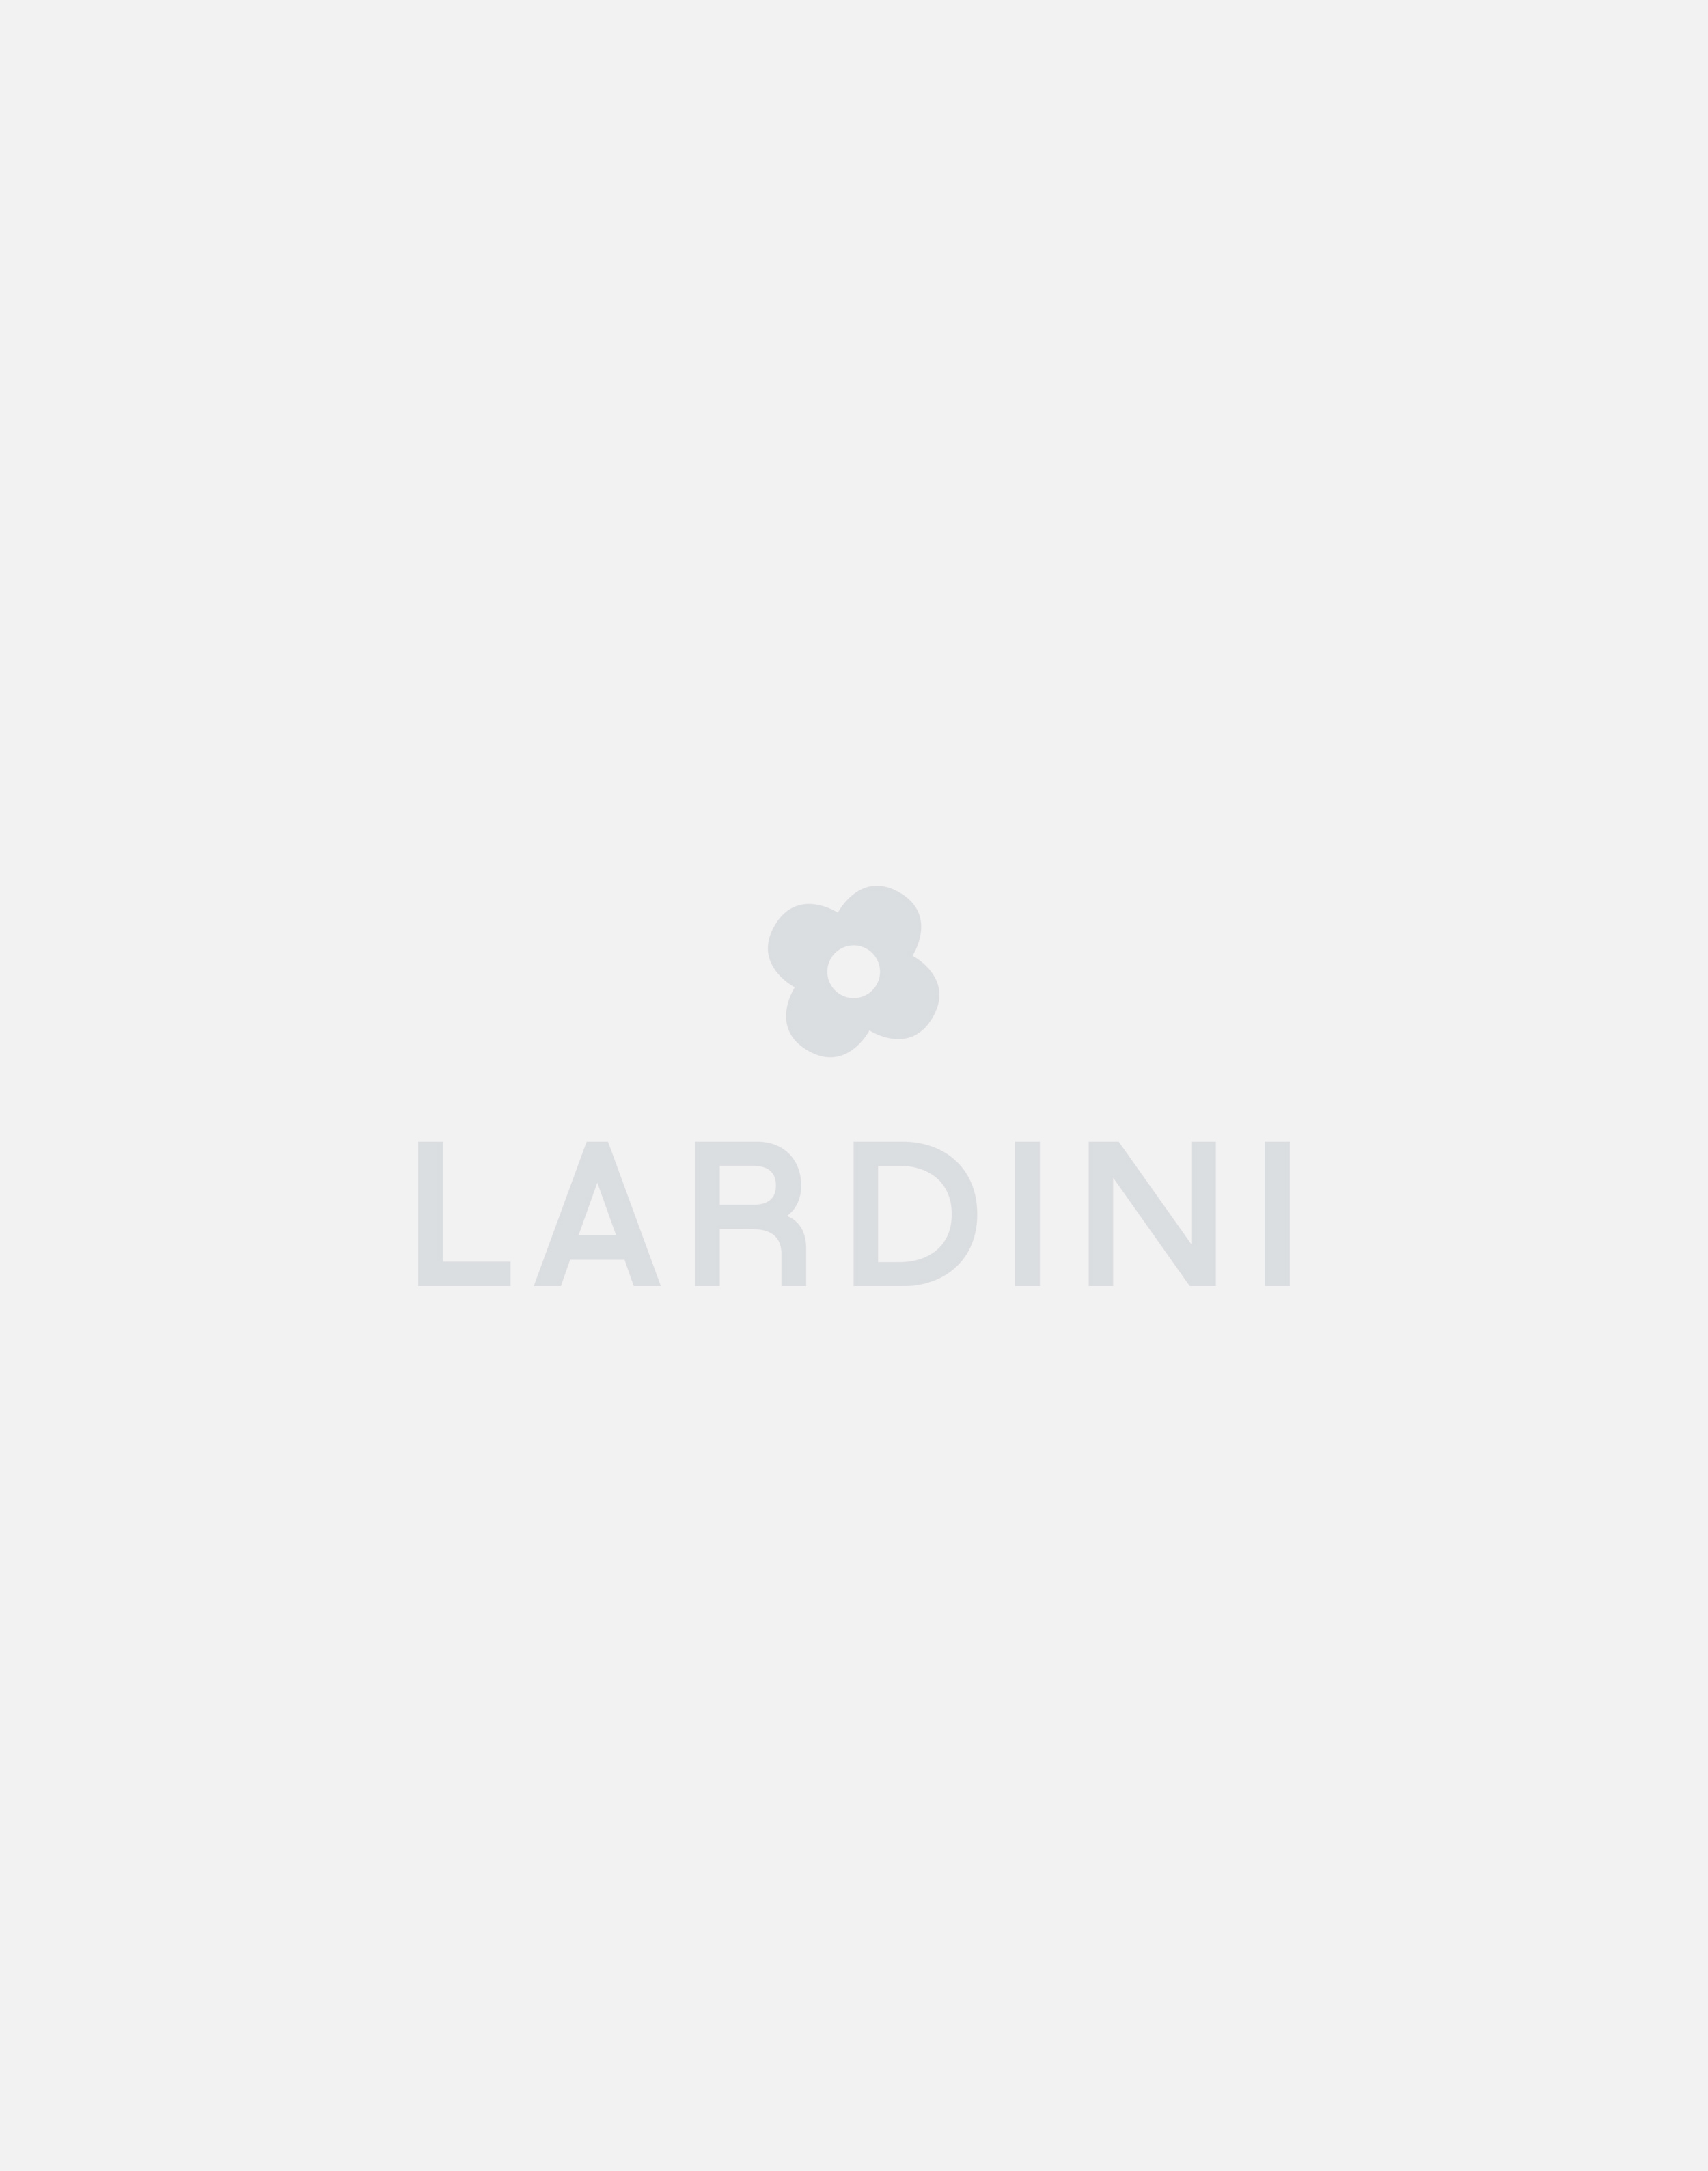 White cotton and linen cardigan - Luigi Lardini capsule